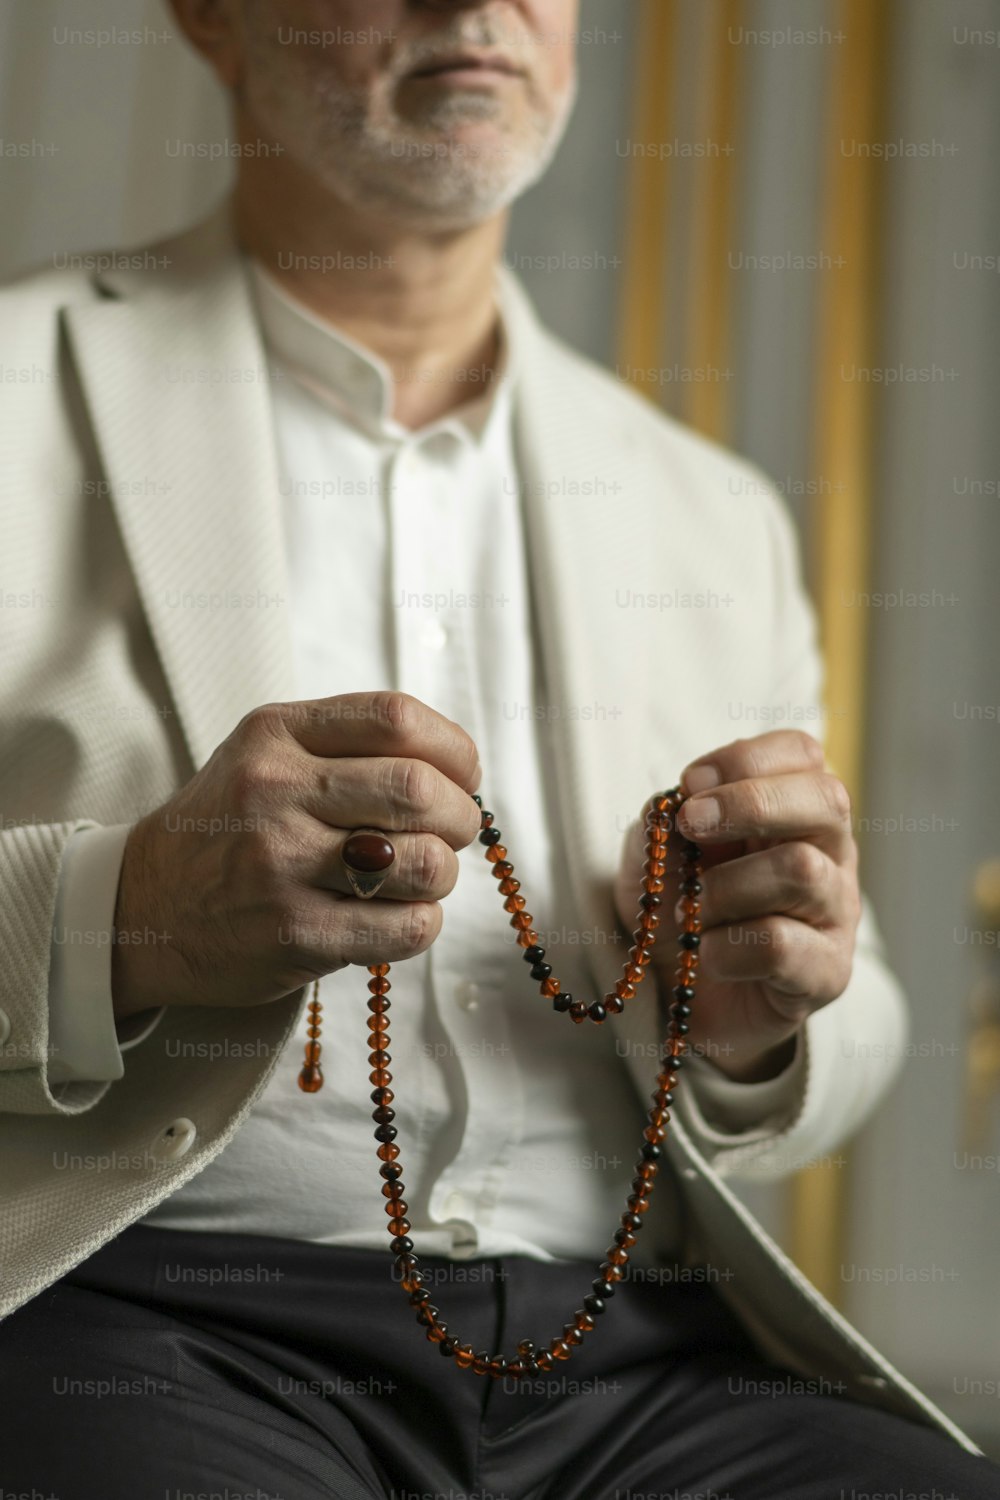 Un hombre con una chaqueta blanca sosteniendo un rosario